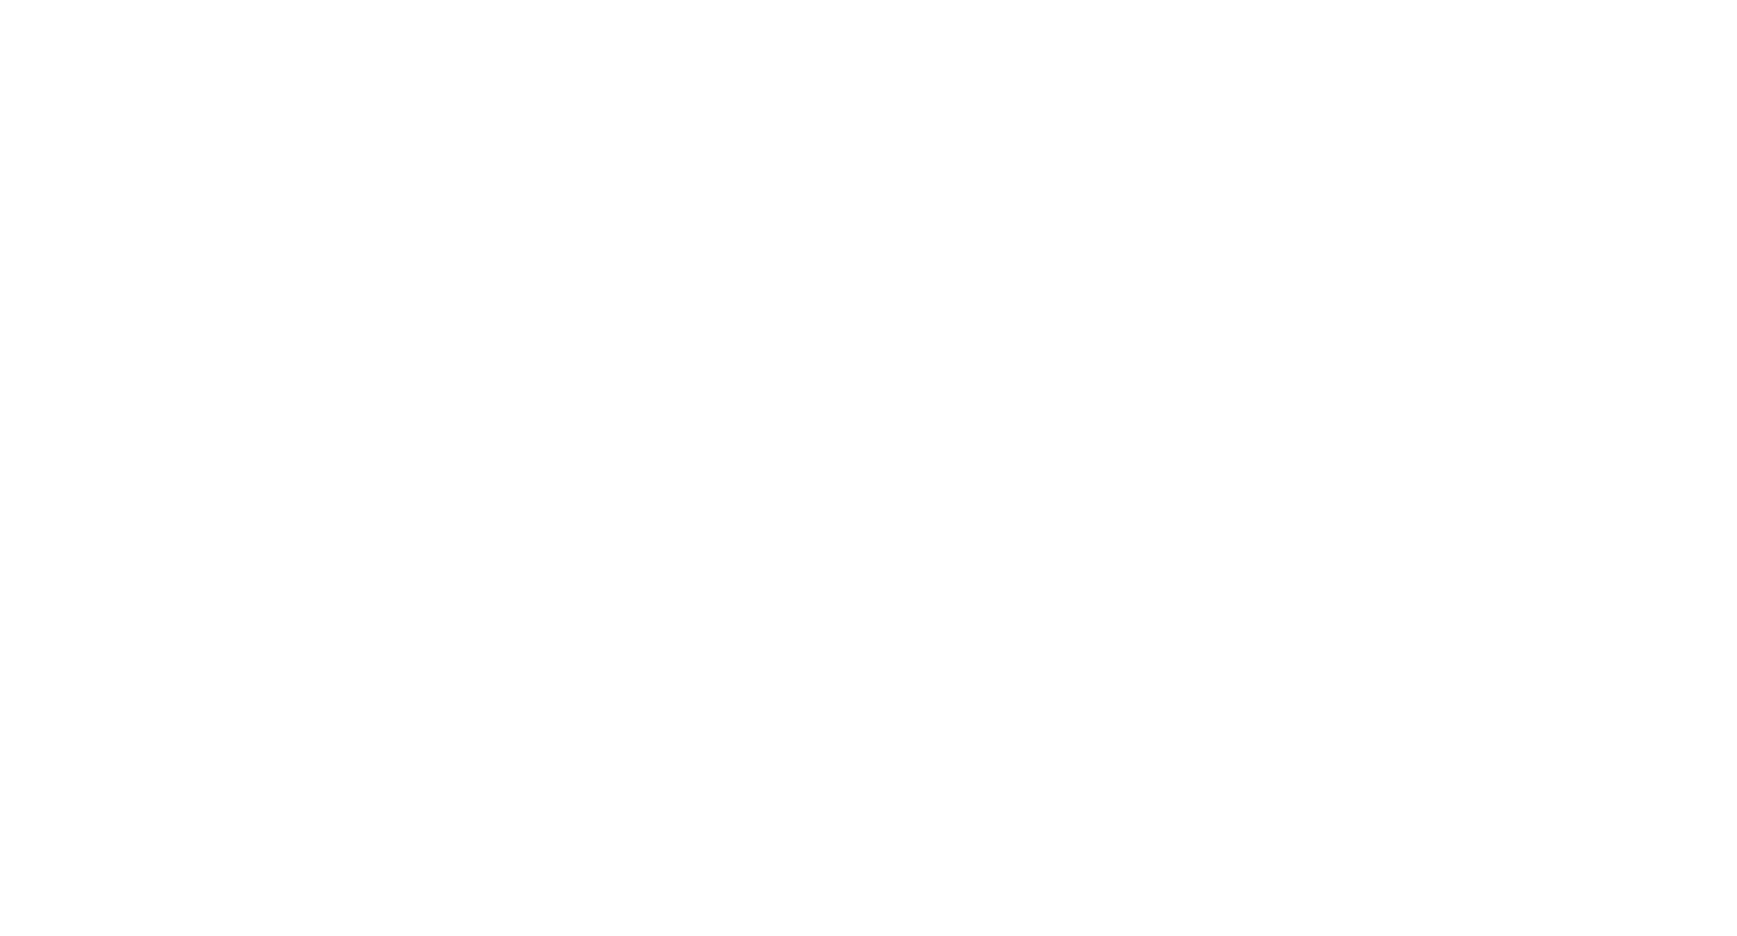 Technopolis, the Flemish science centre